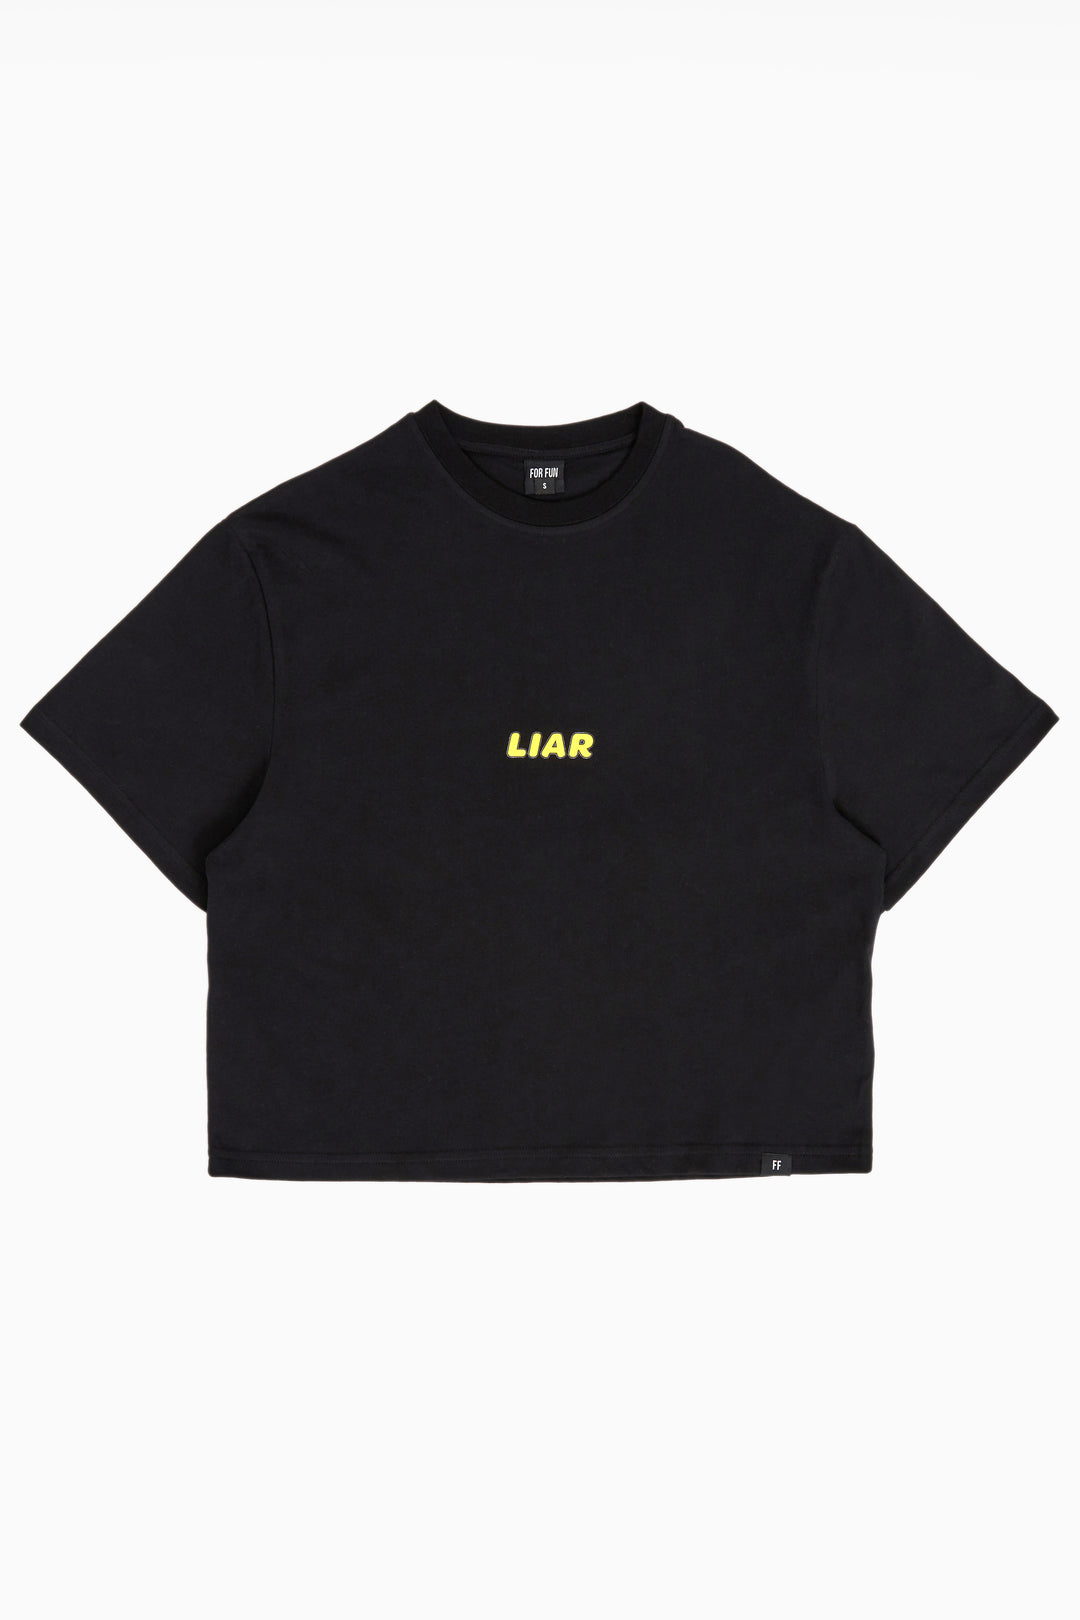 Liar / Women Oversized T-shirt